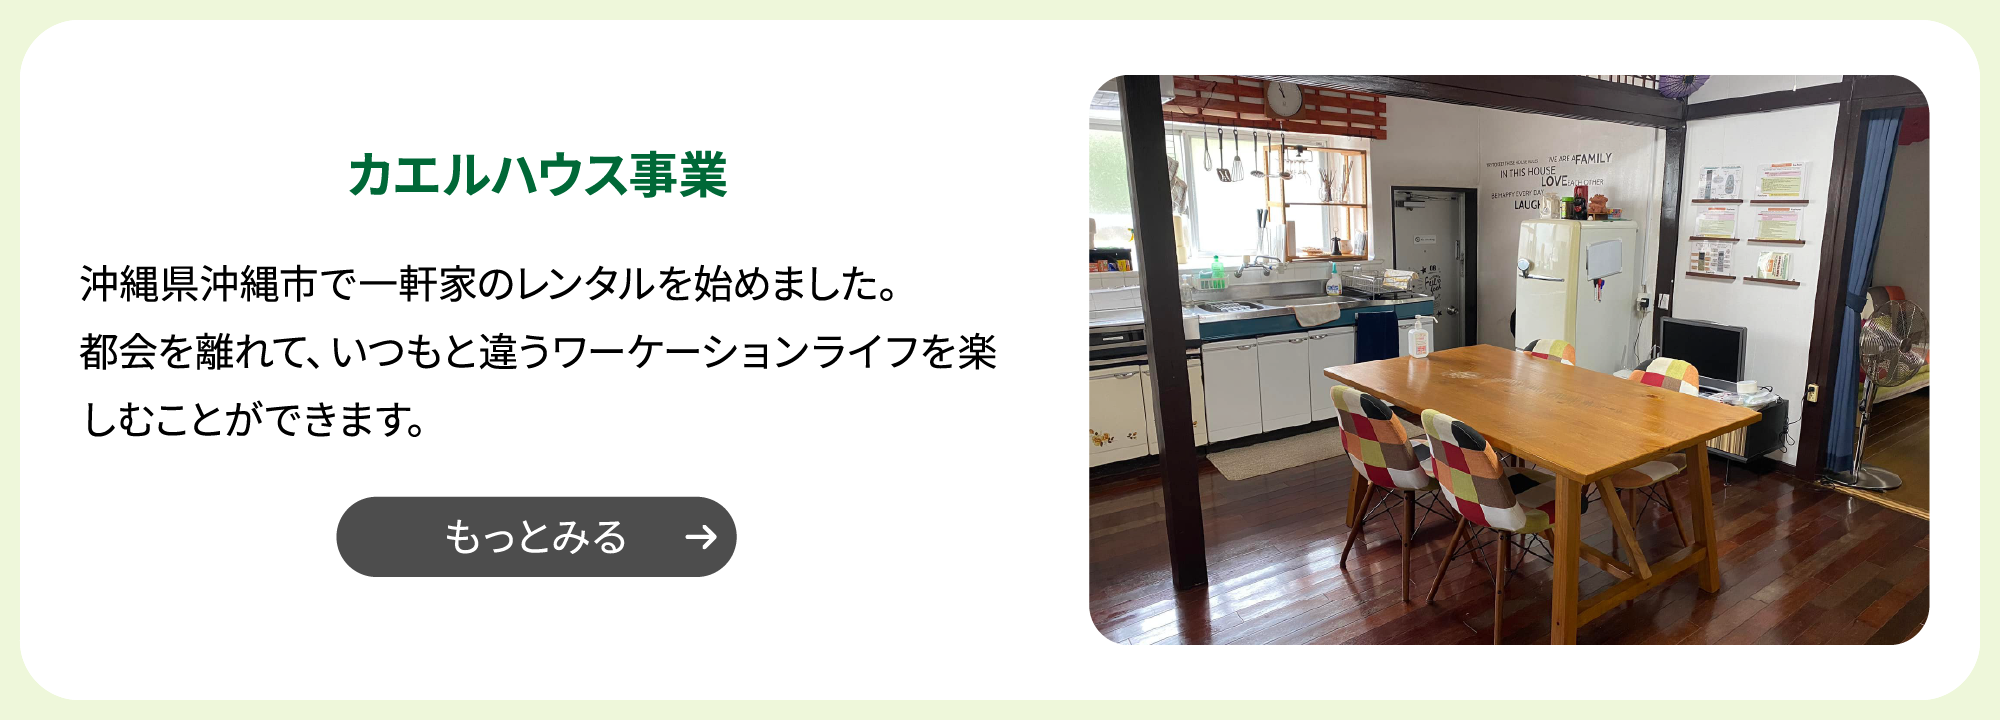 hover前:カエルハウス事業 沖縄県沖縄市で一軒家のレンタルを始めました。都会を離れて、いつもと違うワーケーションライフを楽しむことができます。